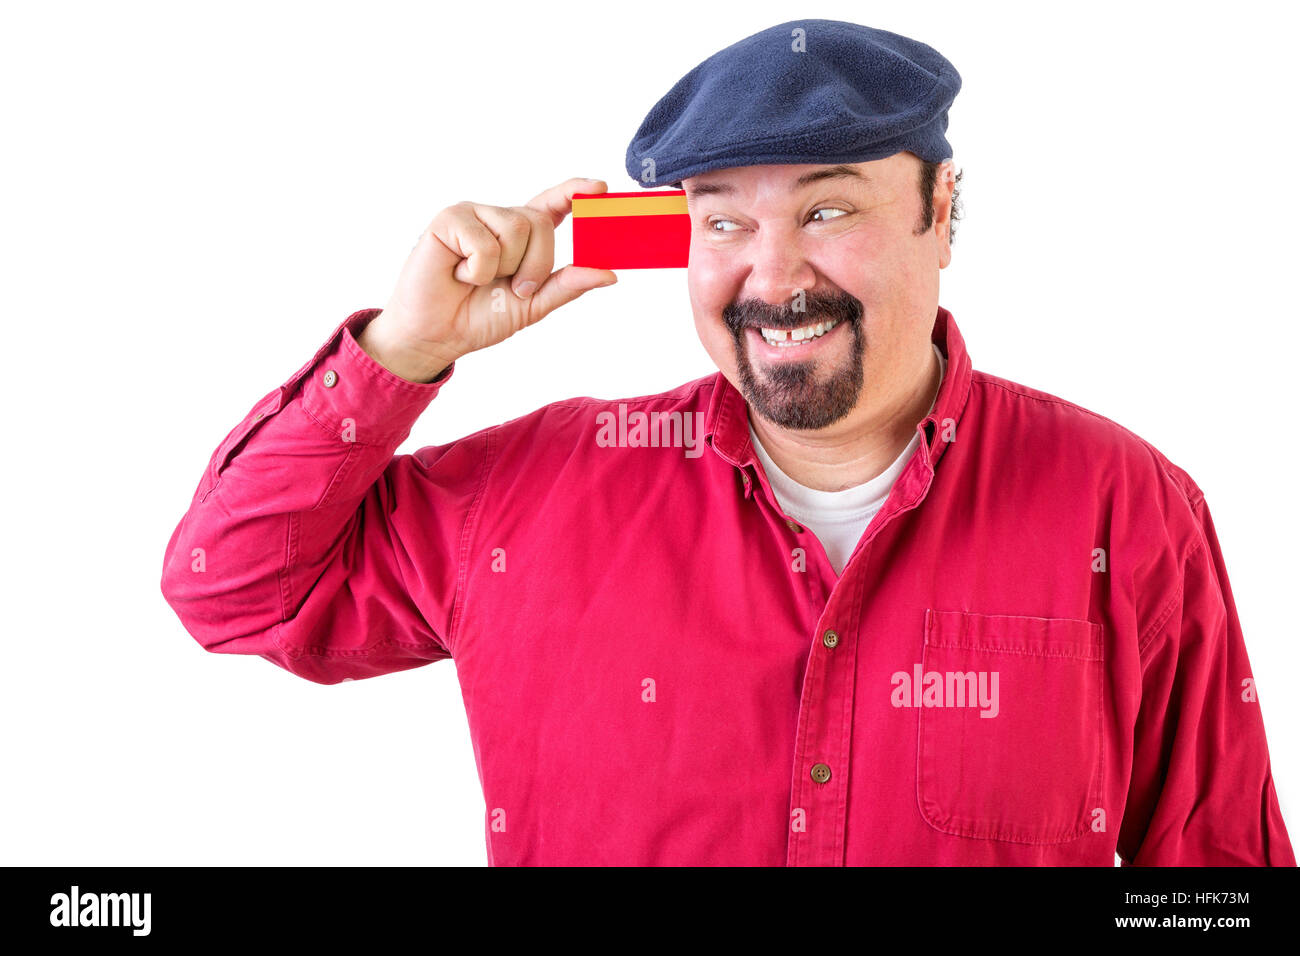 Gleeful - eyeing uomo la sua carta di credito con un sorriso raggiante di anticipazione come egli immagina tutte le cose che egli può andare fuori e comprare, corpo superiore in una maglietta rossa Foto Stock